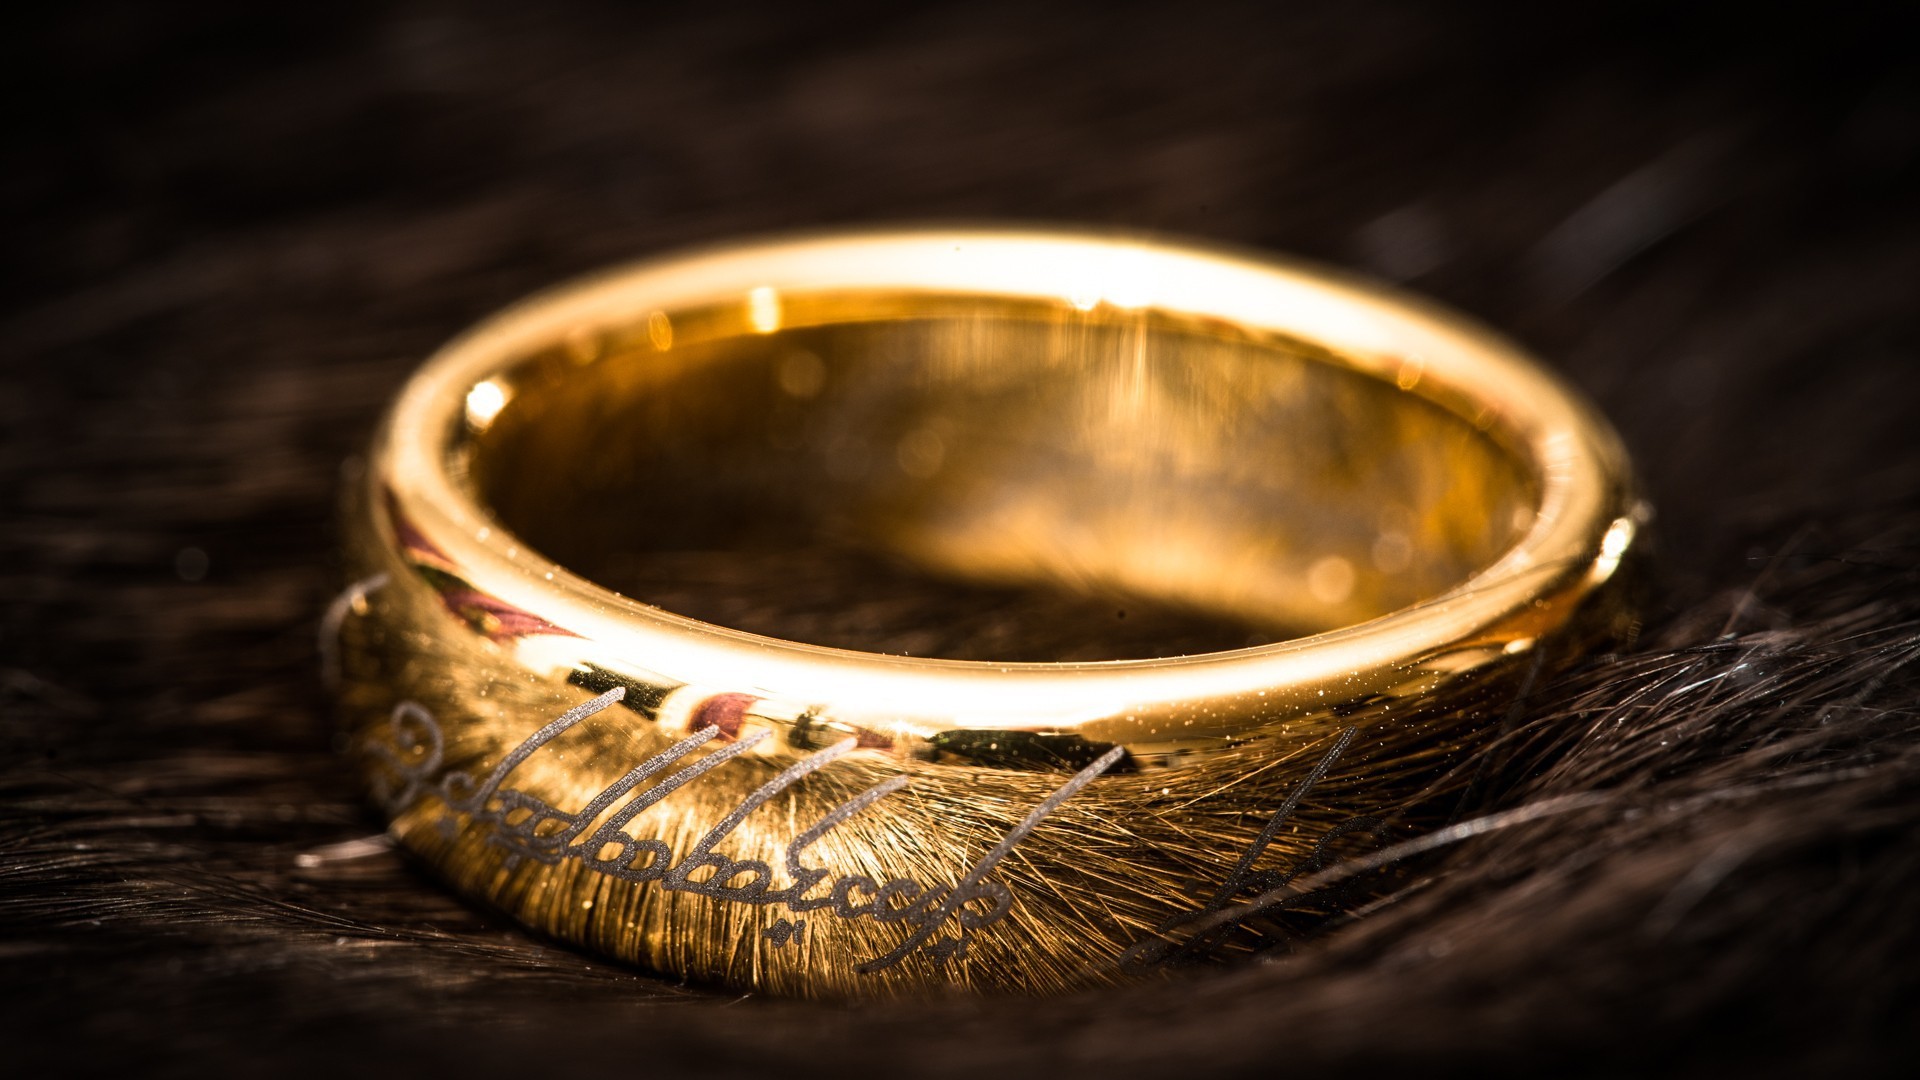 ロード・オブ・ザ・リング壁紙hd,リング,結婚指輪,金属,ゴールド,結婚式用品